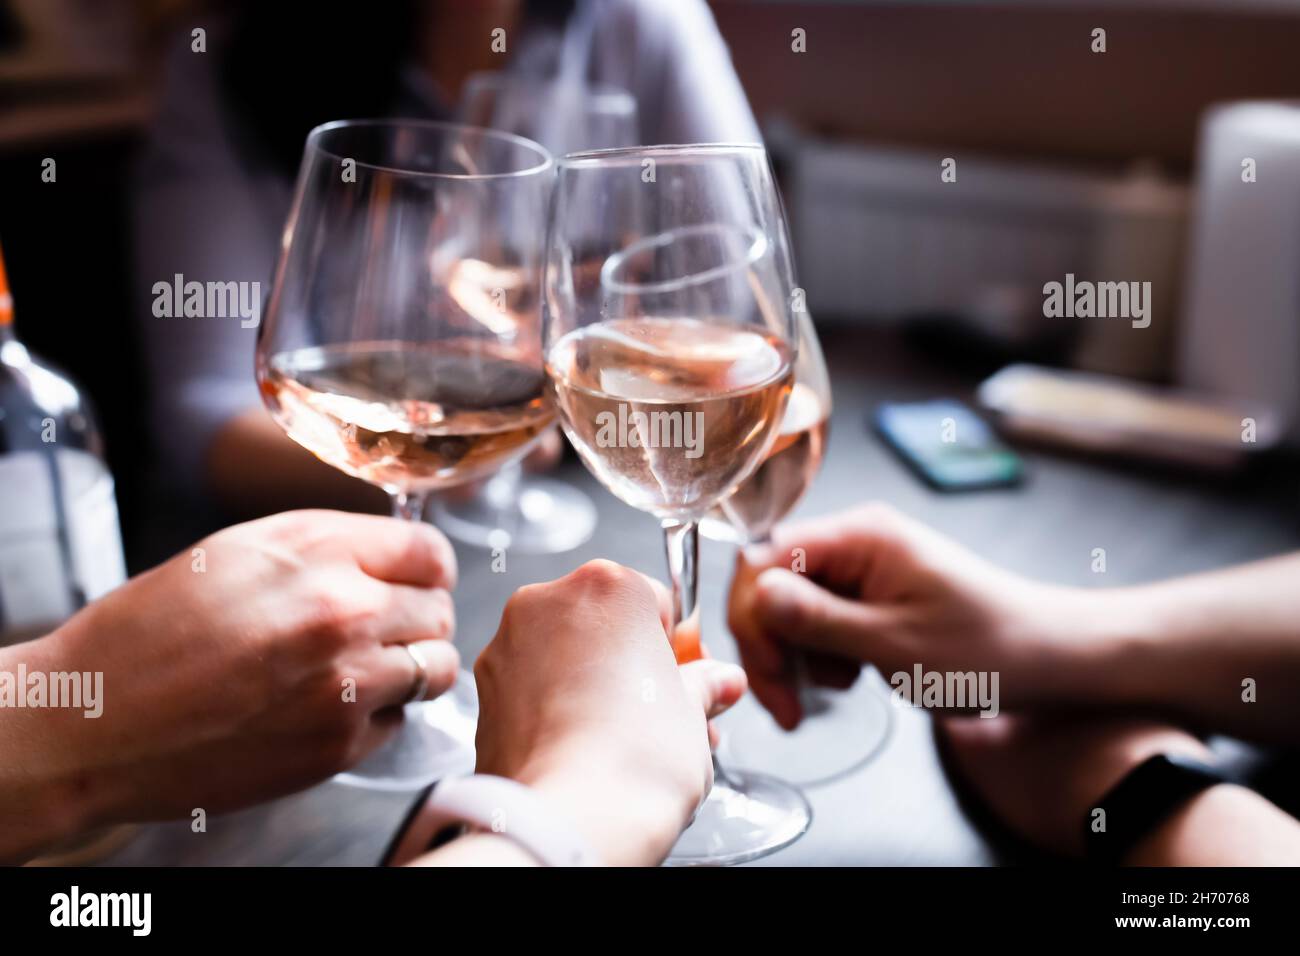 Freunde heben auf einer Heimparty Gläser Wein auf. Russland, Vorderansicht. Stockfoto